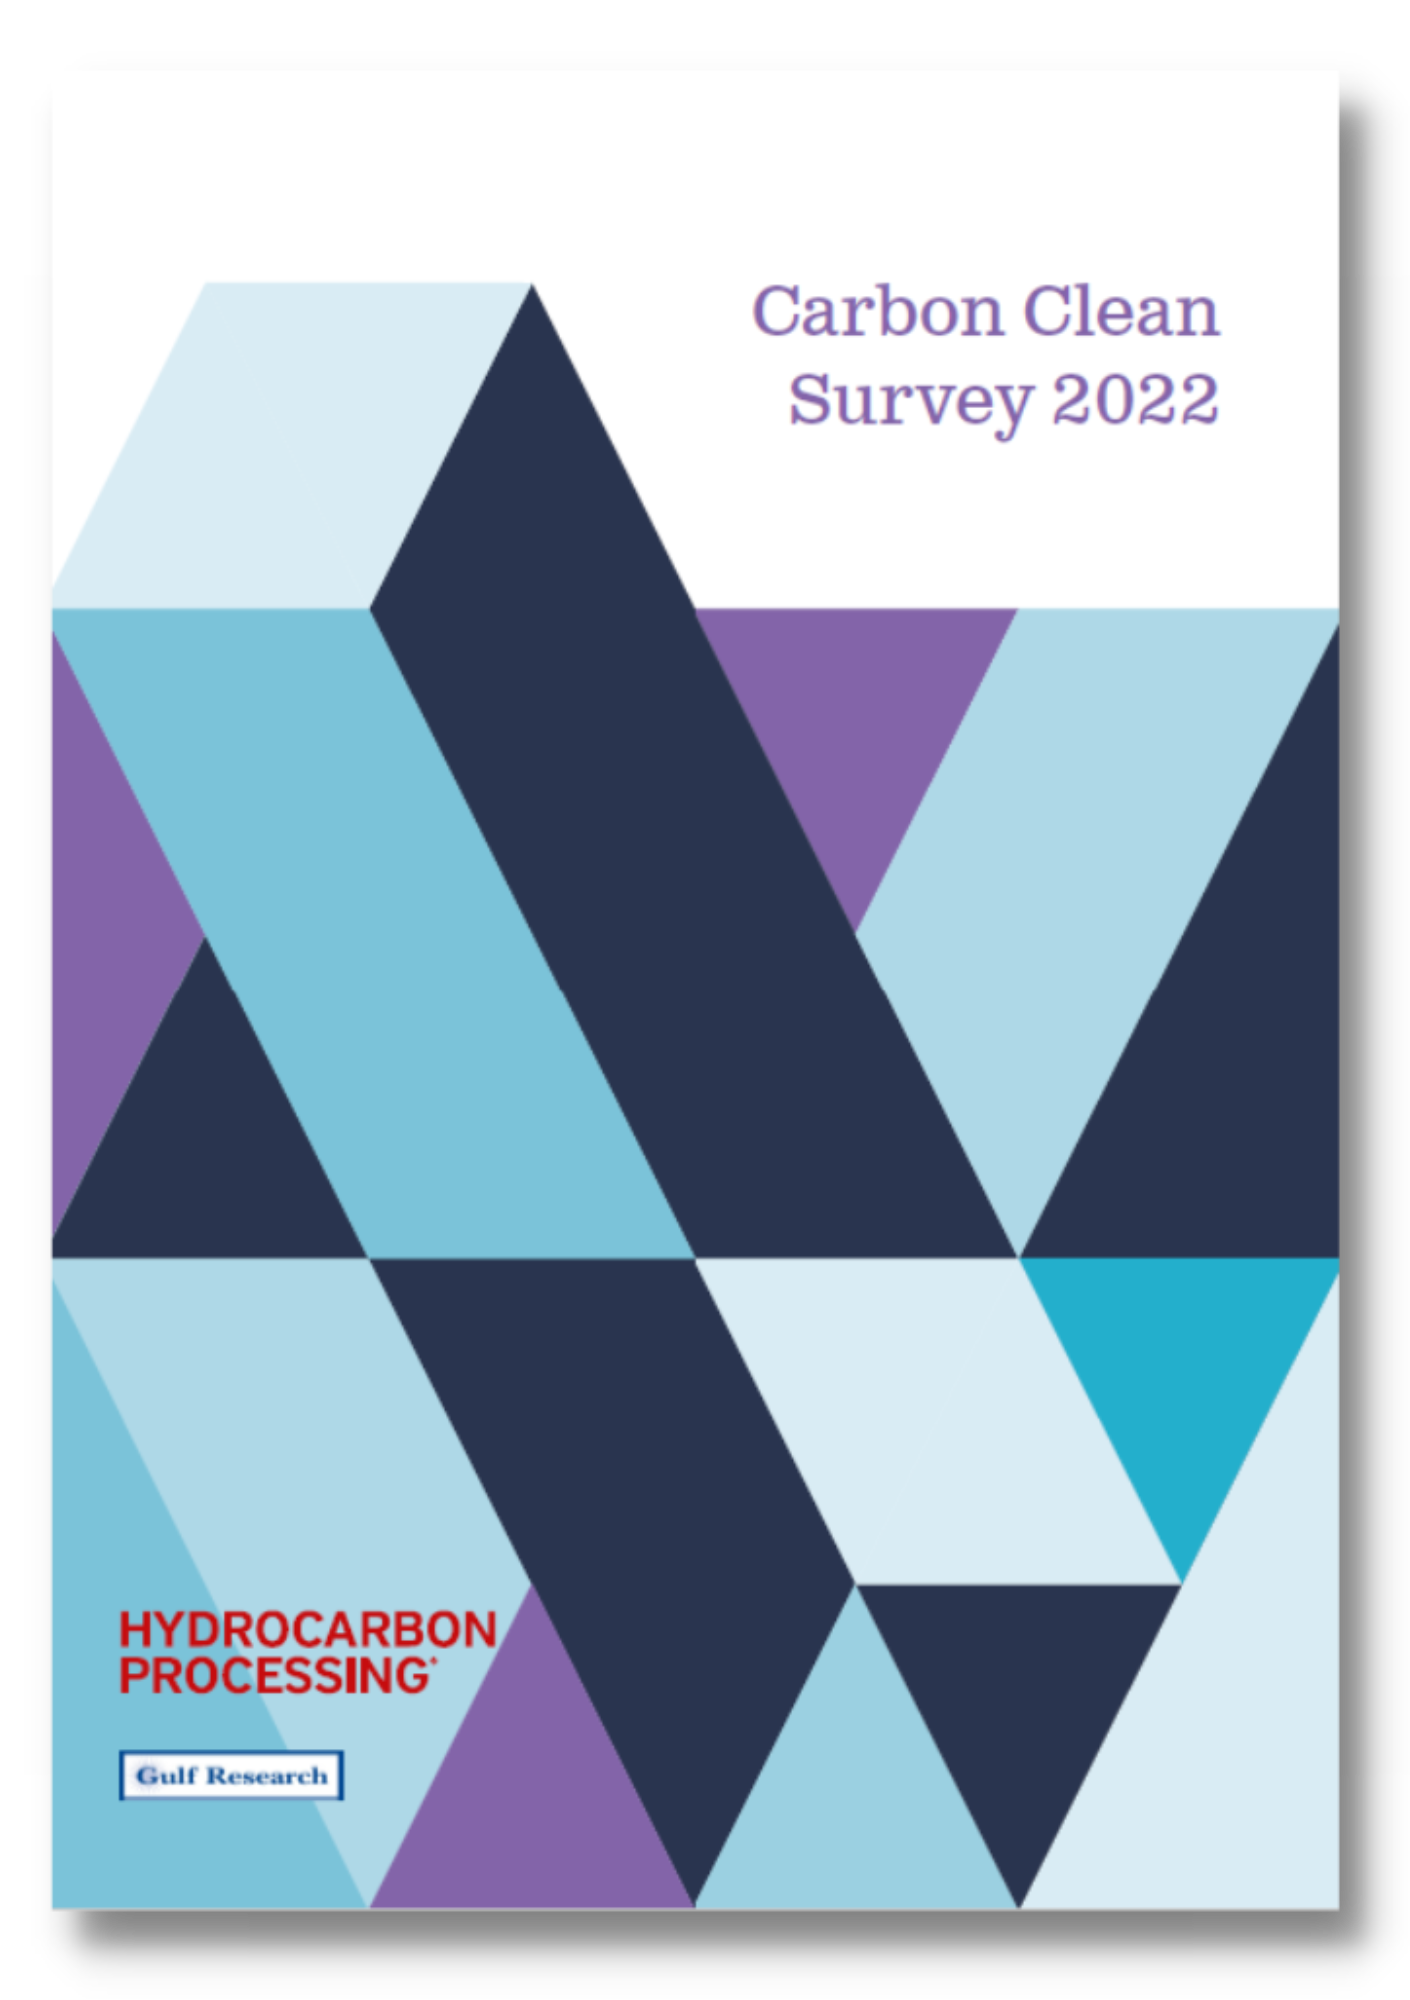 Hydrocarbon Processing Survey | Carbon Clean Image